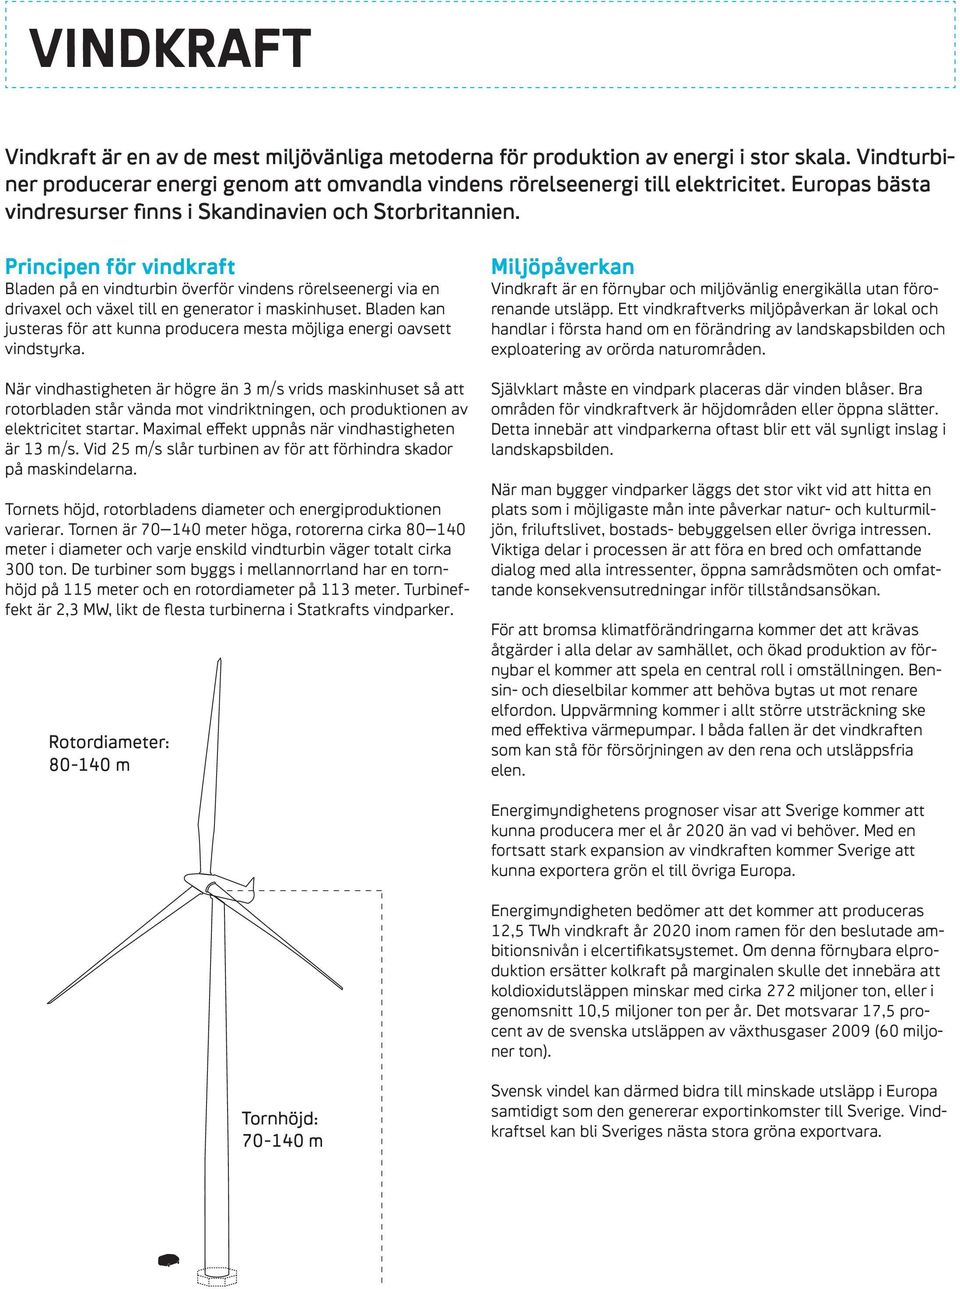 principen för vindkraft Bladen på en vindturbin överför vindens rörelseenergi via en drivaxel och växel till en generator i maskinhuset.